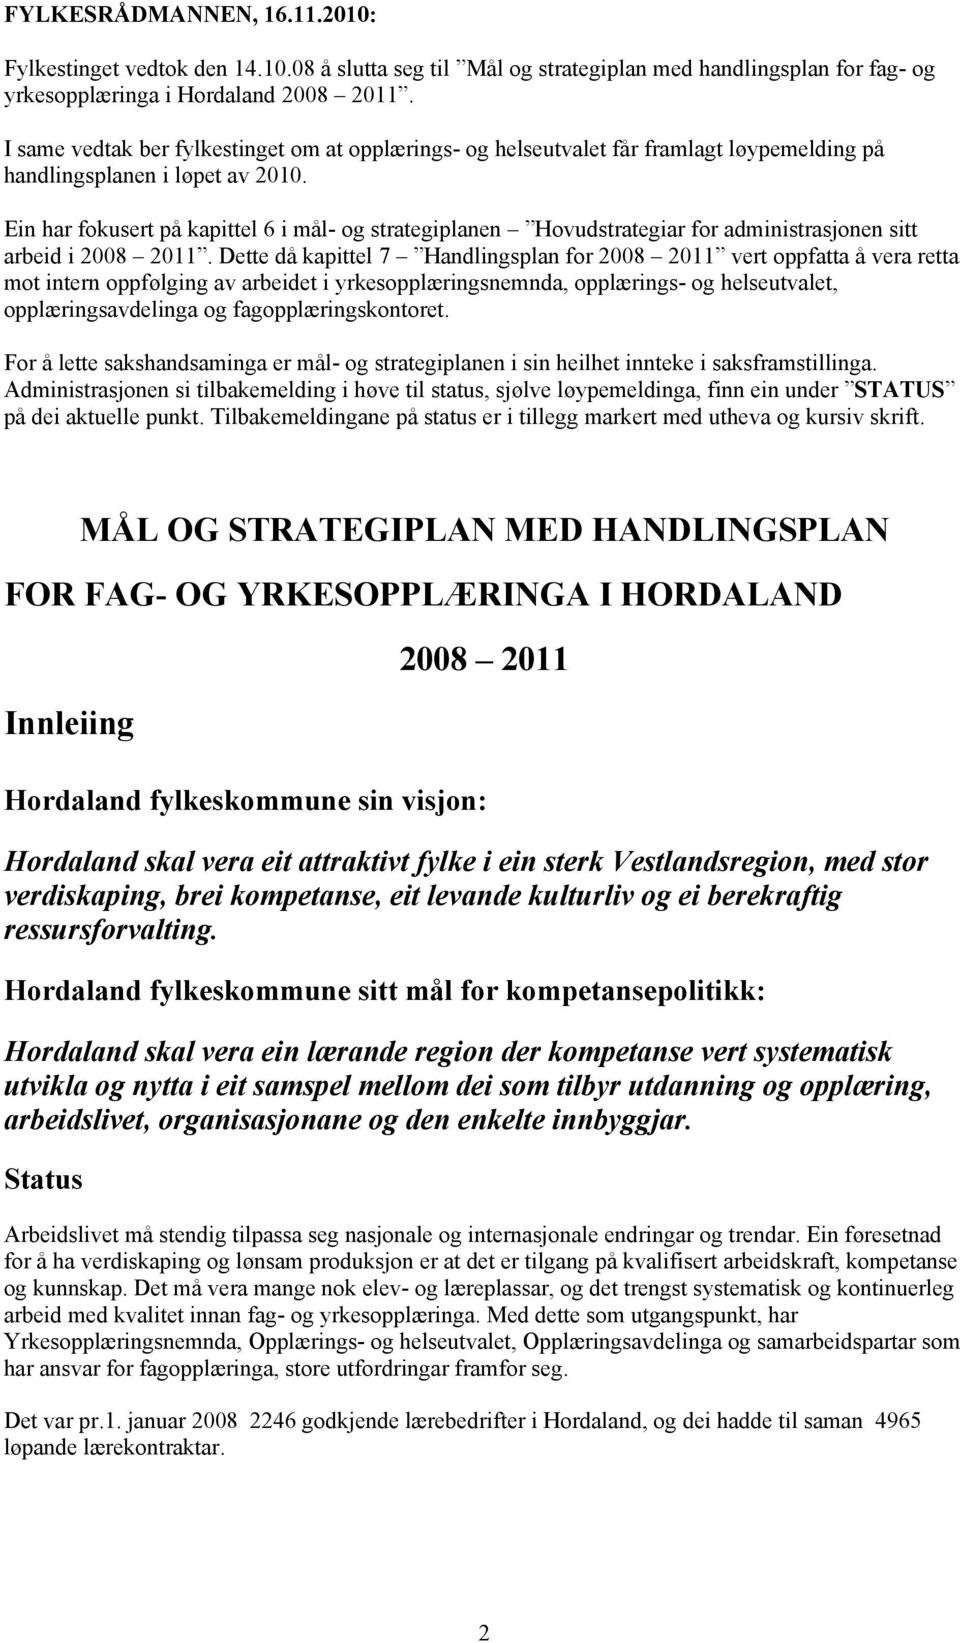 Ein har fokusert på kapittel 6 i mål- og strategiplanen Hovudstrategiar for administrasjonen sitt arbeid i 2008 2011.